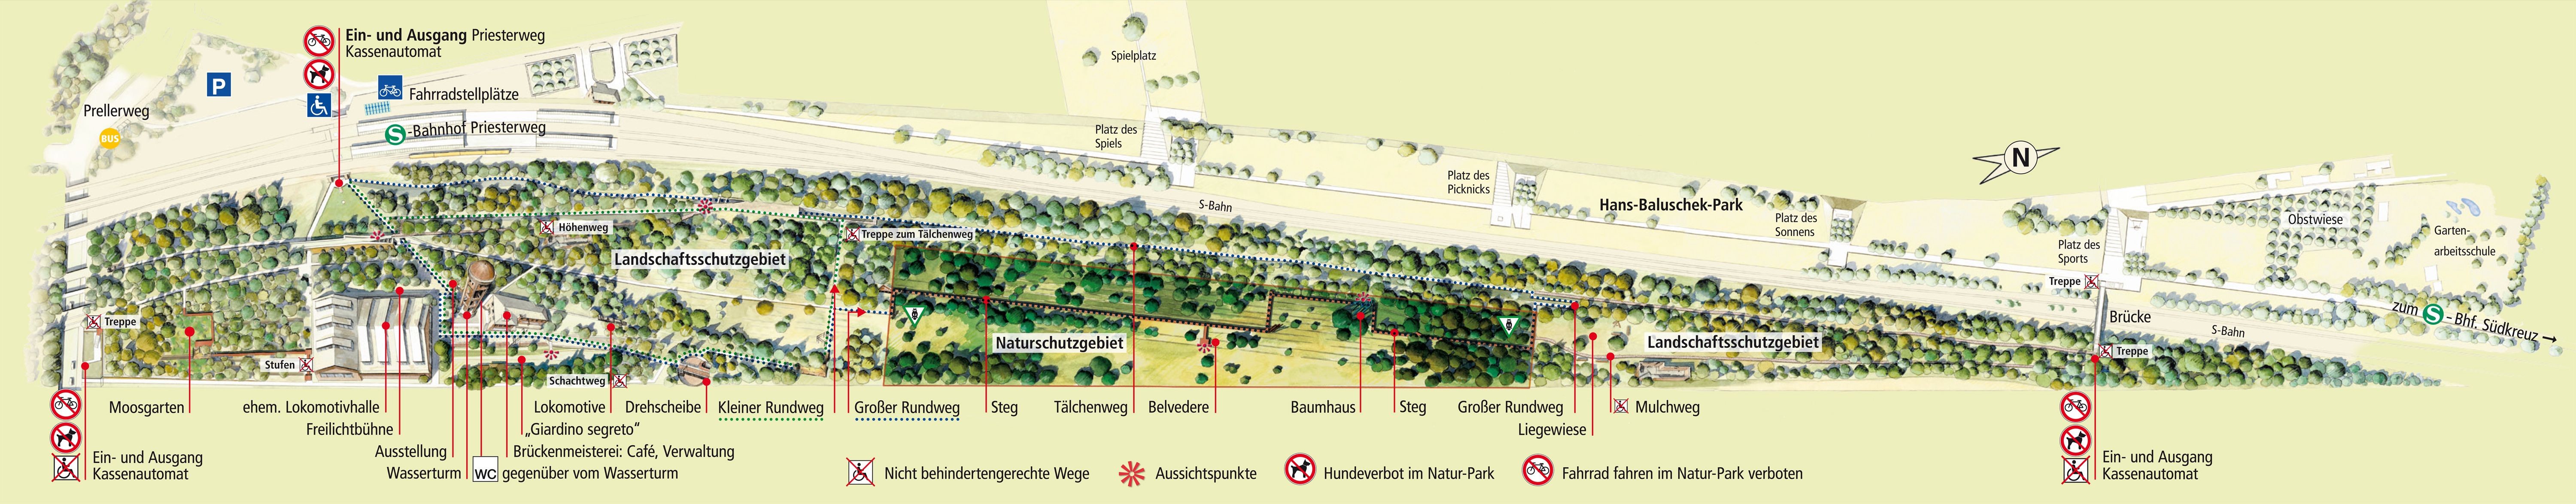 Plan Natur-Park Schöneberger Südgelände